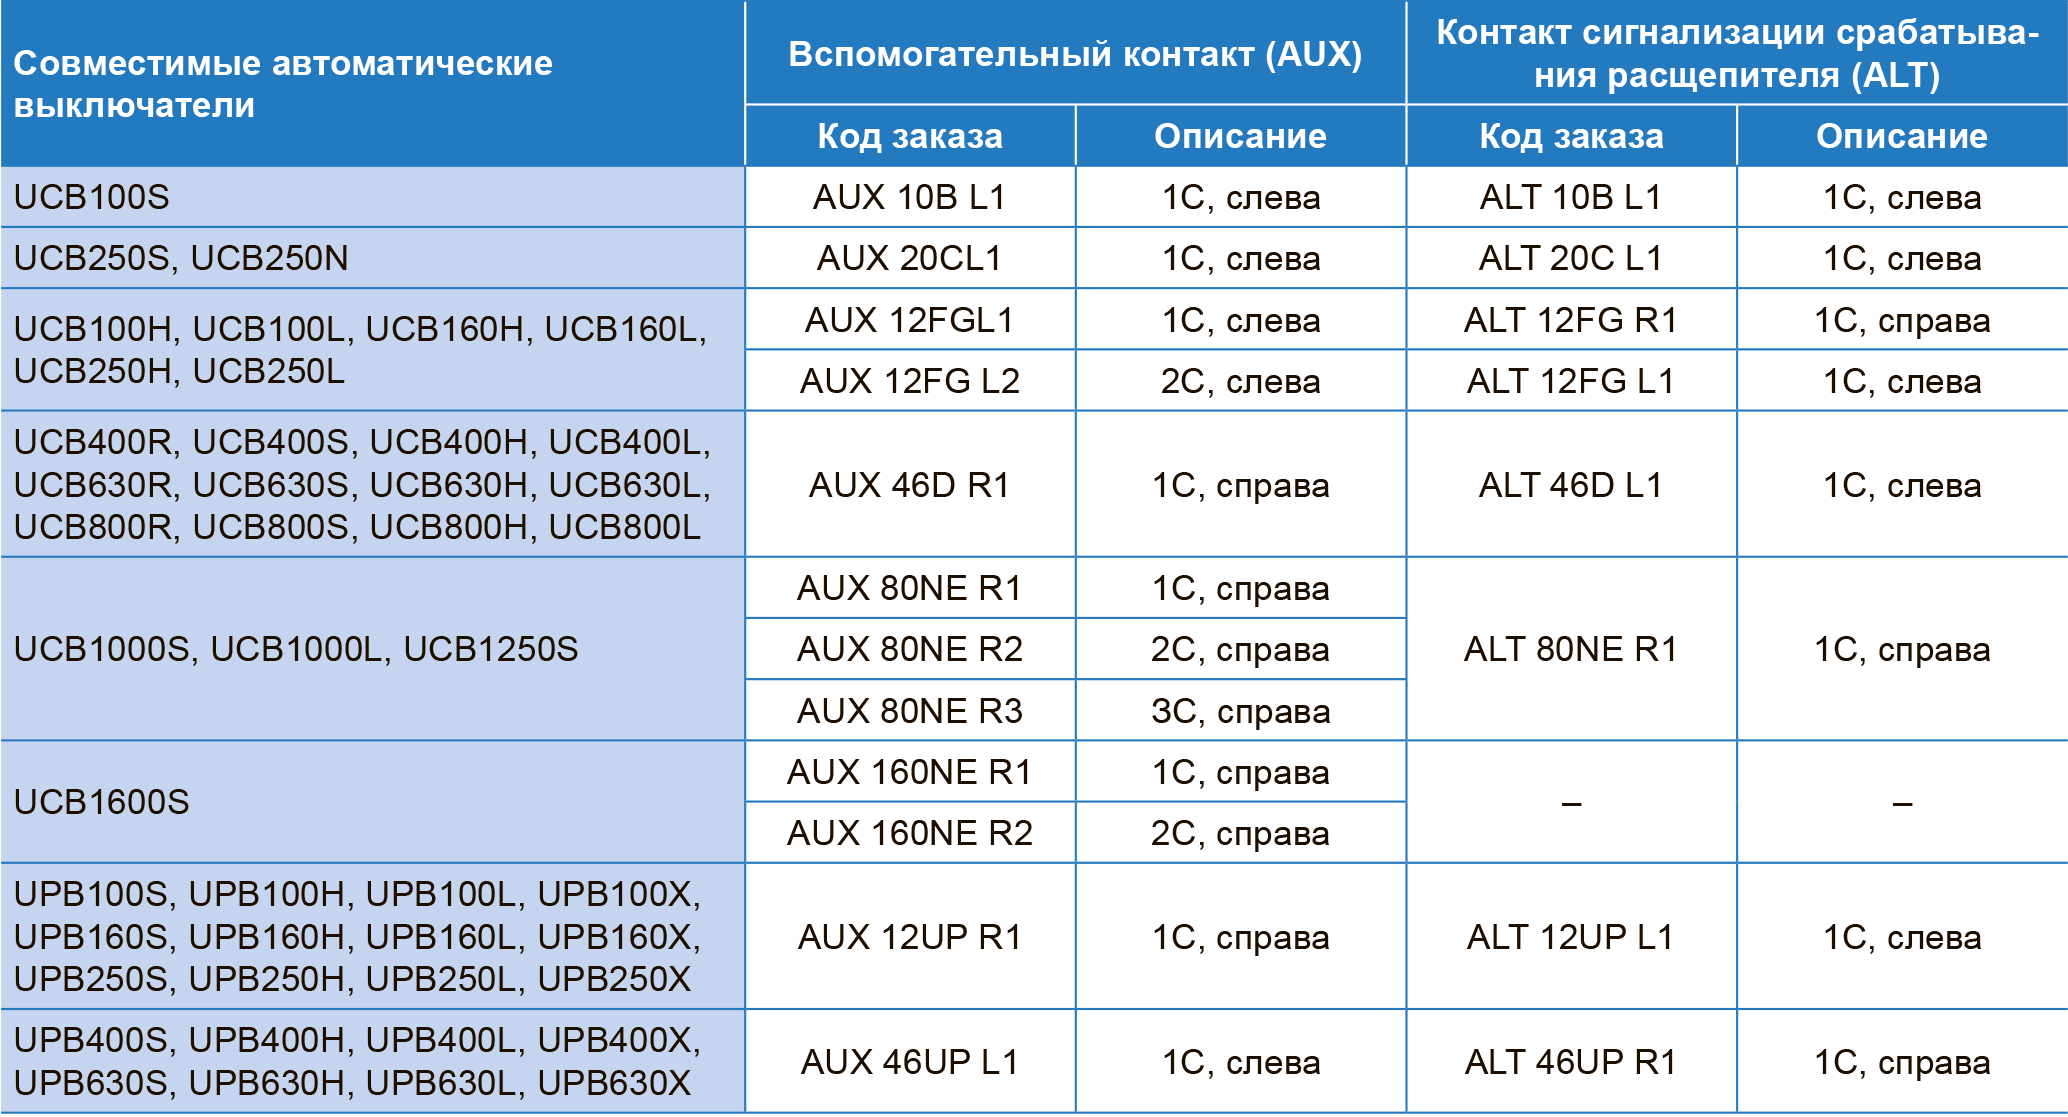 Вспомогательный контакт (AUX) и контакт сигнализации срабатывания расцепителя (ALT) для автоматических выключателей серий UCB, UPB ЧЭАЗ